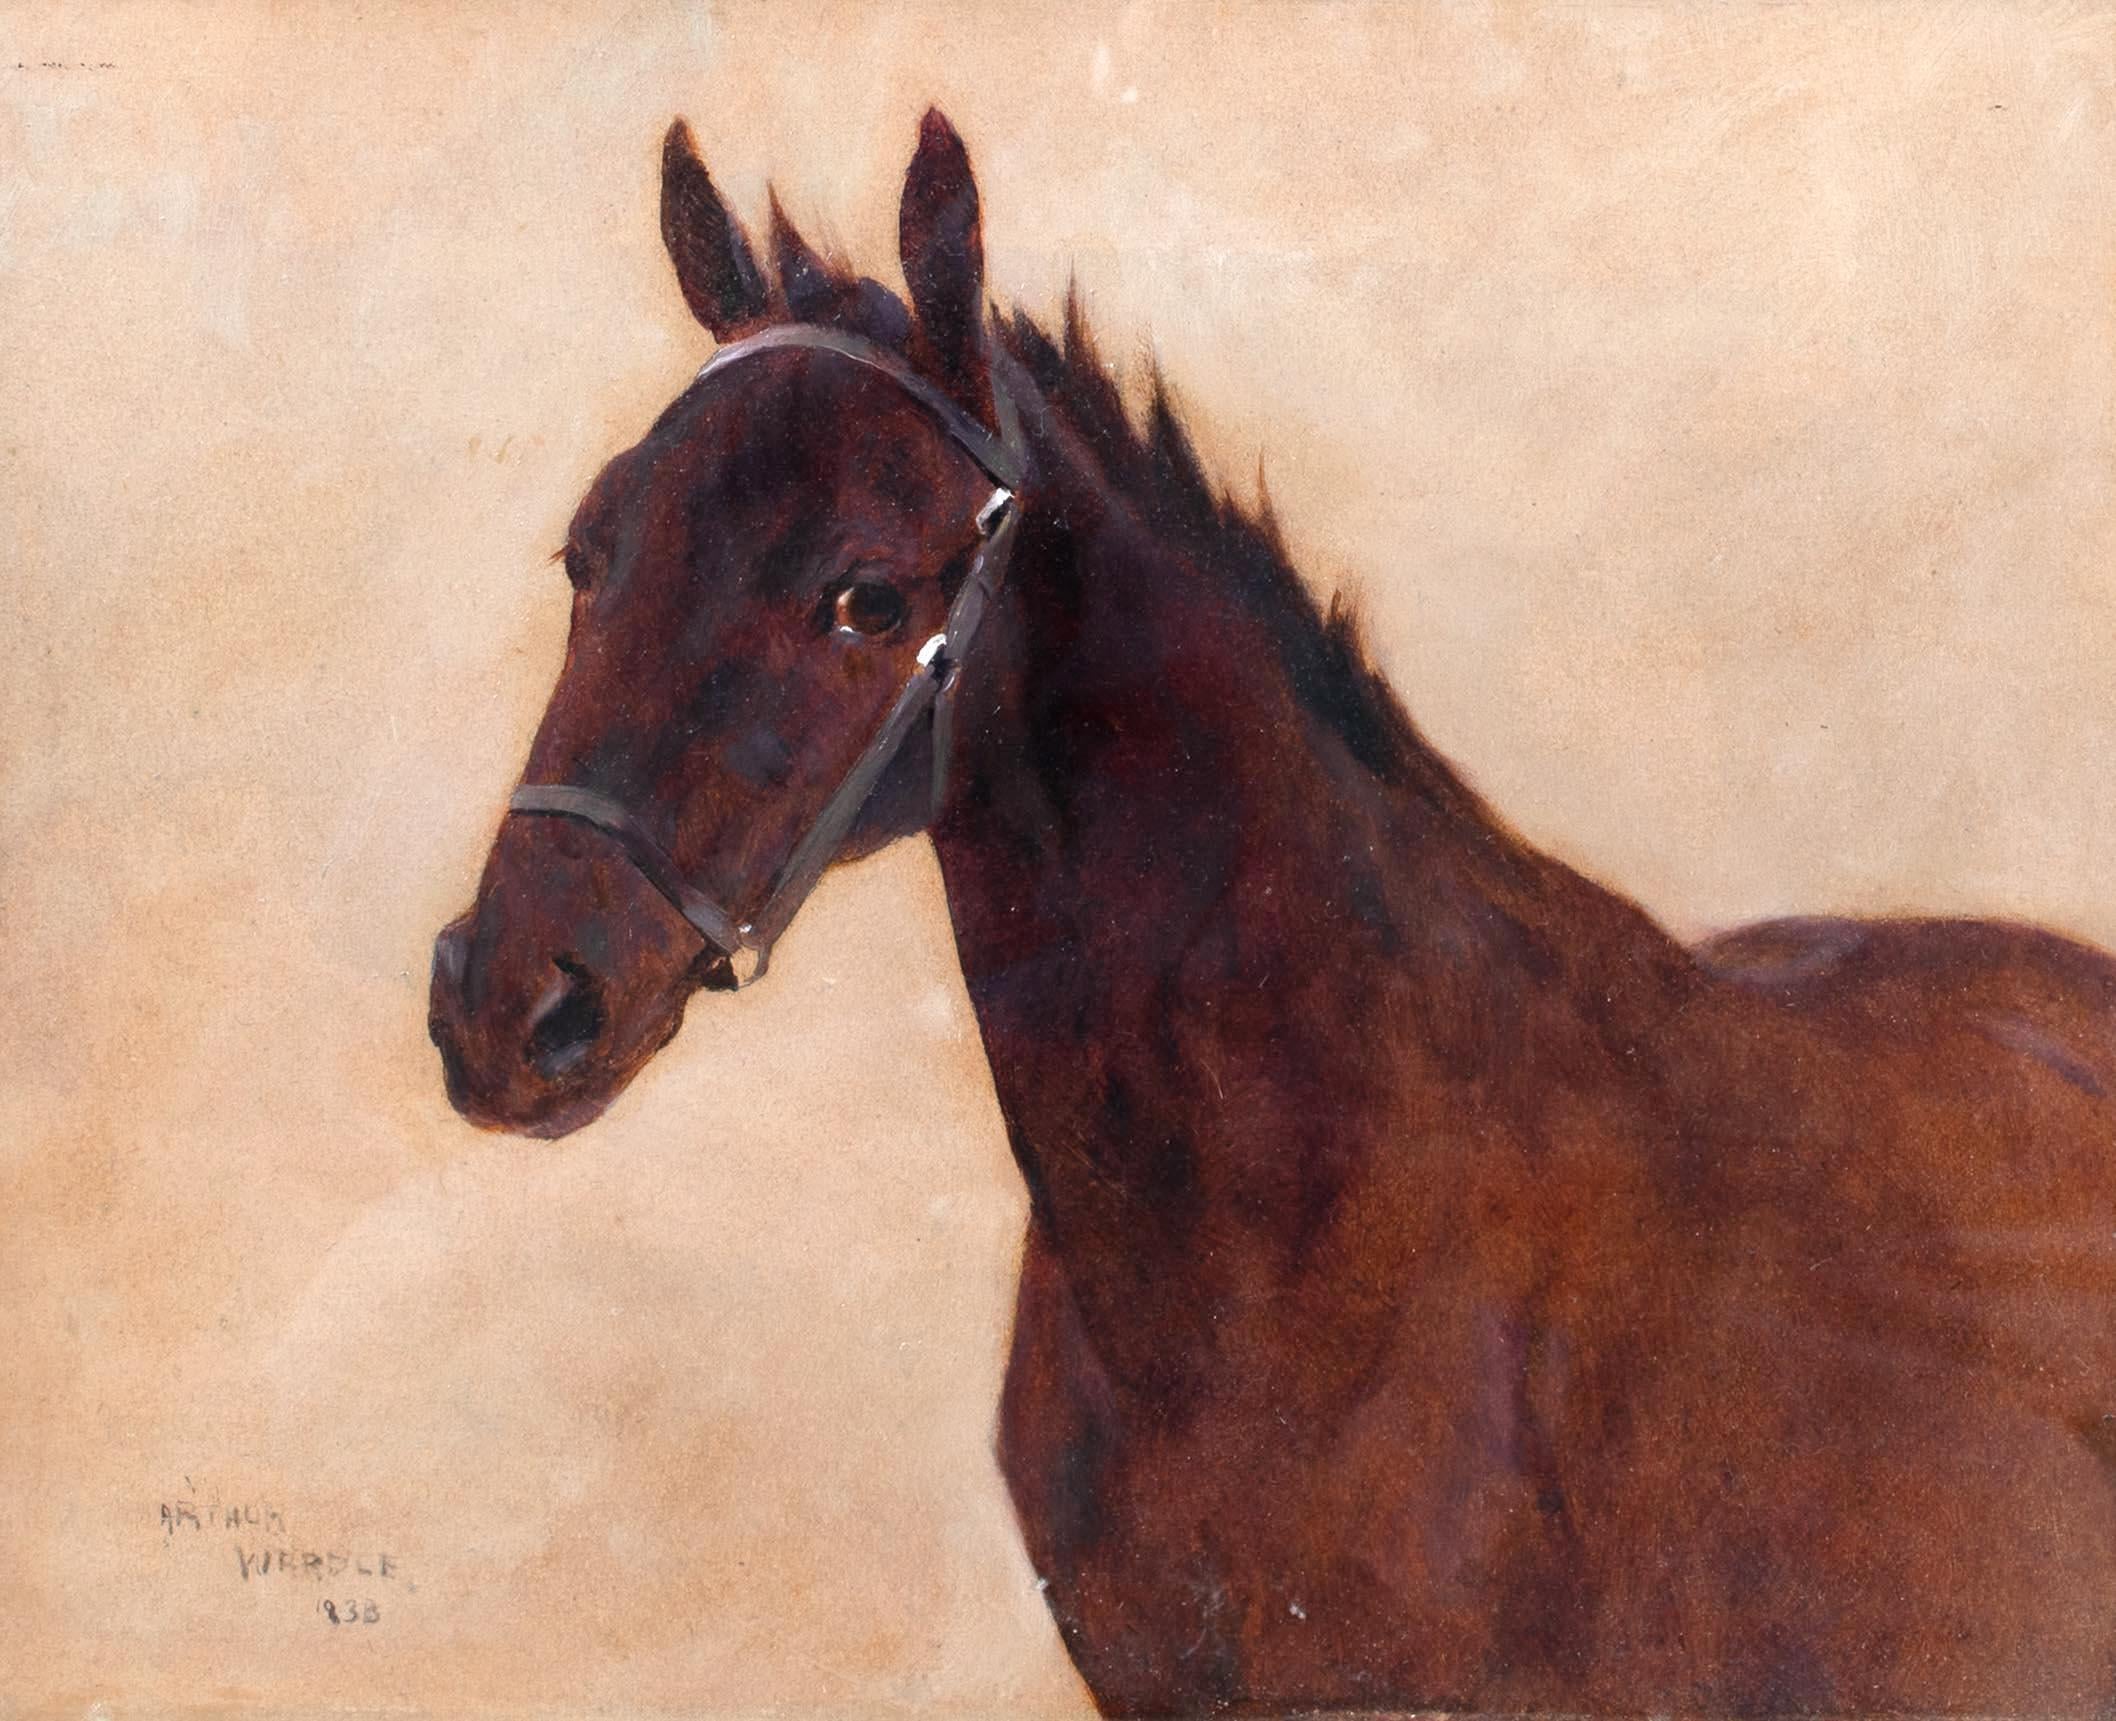 Portrait d'un cheval, 19e siècle

par Arthur WARDLE (1864-1949)

Portrait esquissé d'un cheval au 19e siècle, huile sur panneau par Arthur Wardle. Étude/esquisse de bonne qualité et en bon état, réalisée par un peintre animalier de premier plan de